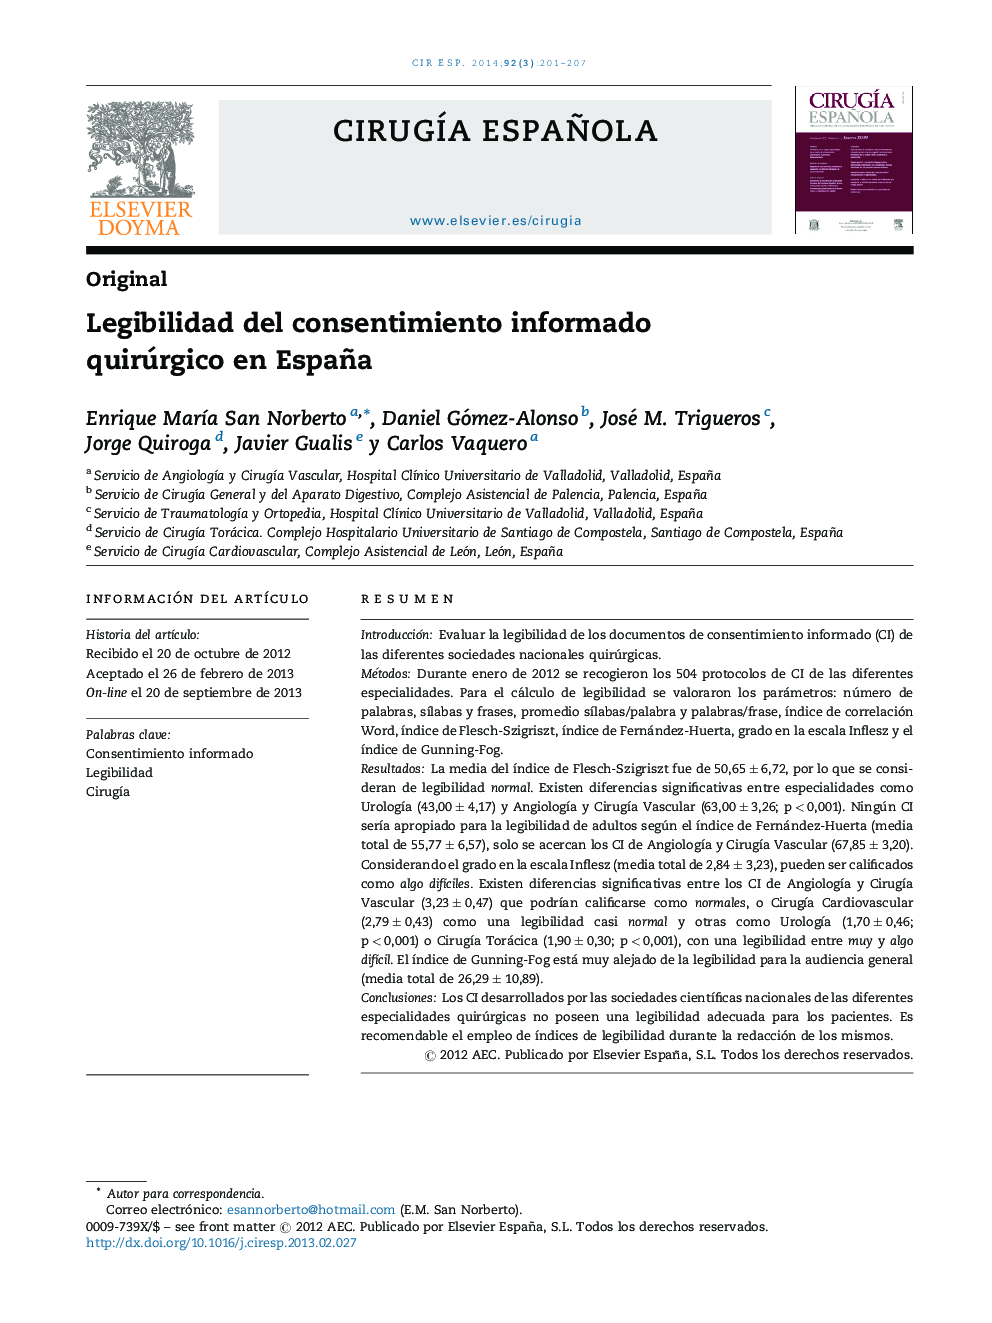 Legibilidad del consentimiento informado quirúrgico en España